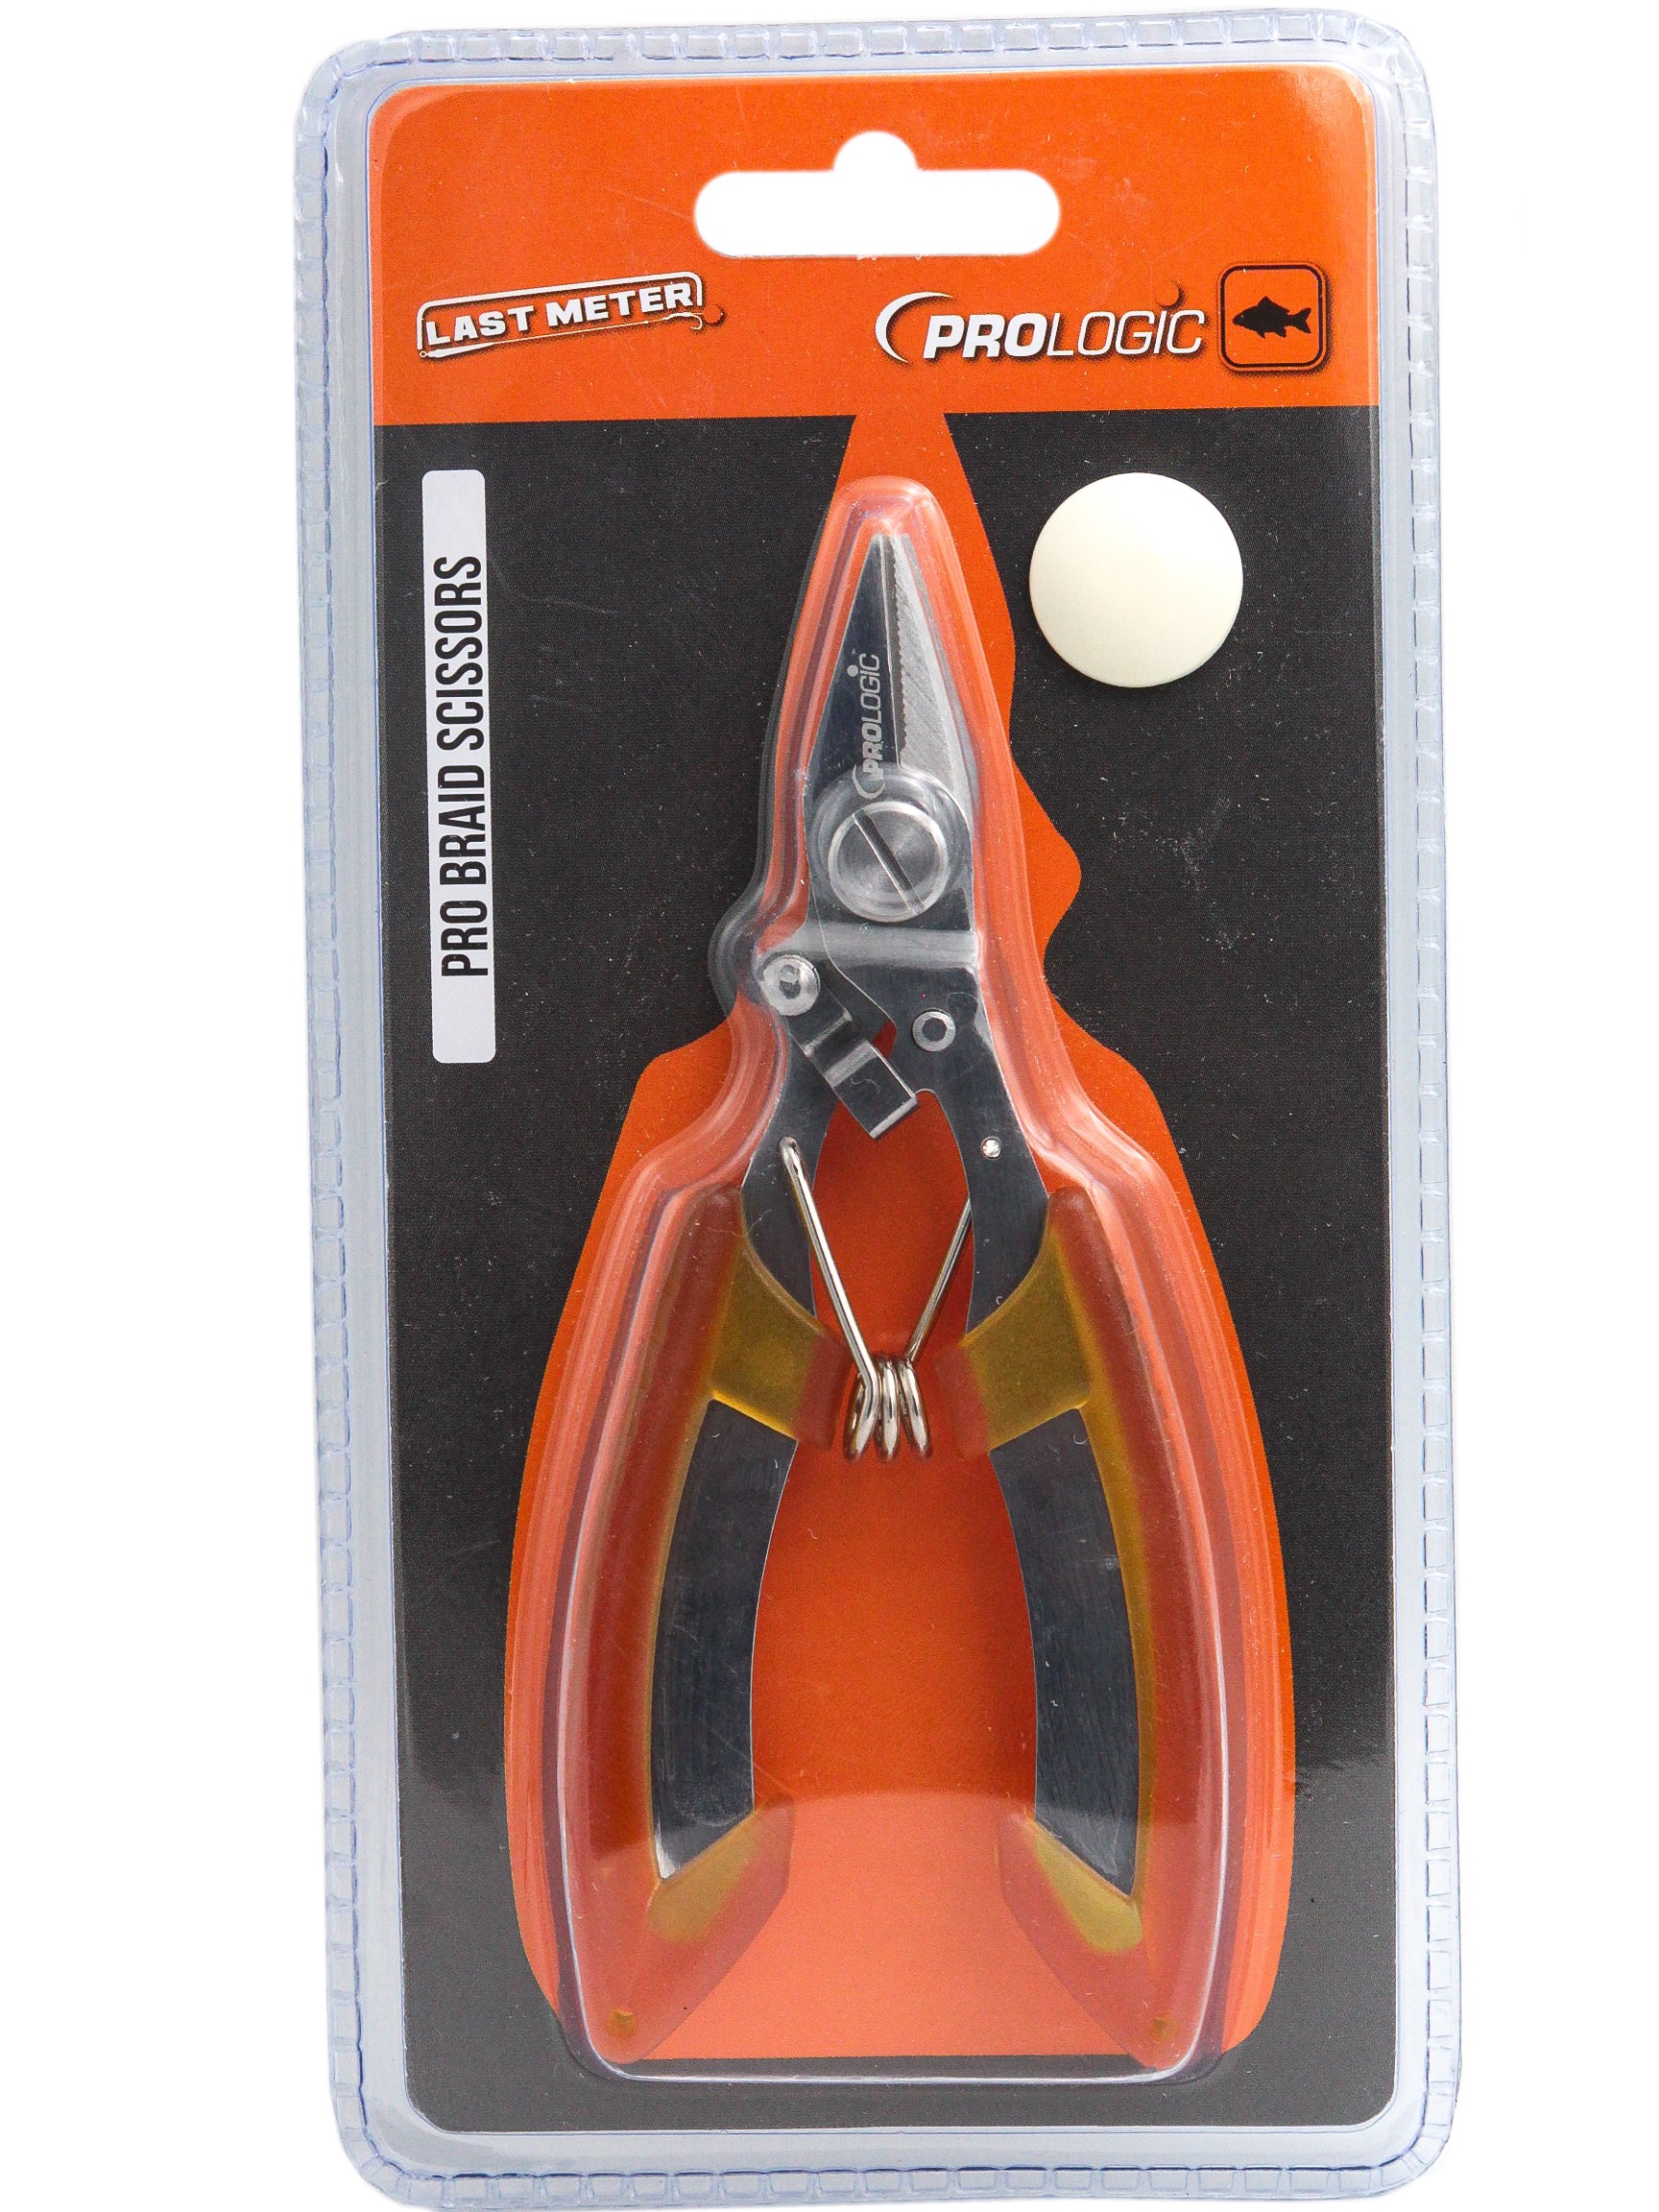 Ножницы Prologic LM pro braid scissors - фото 1